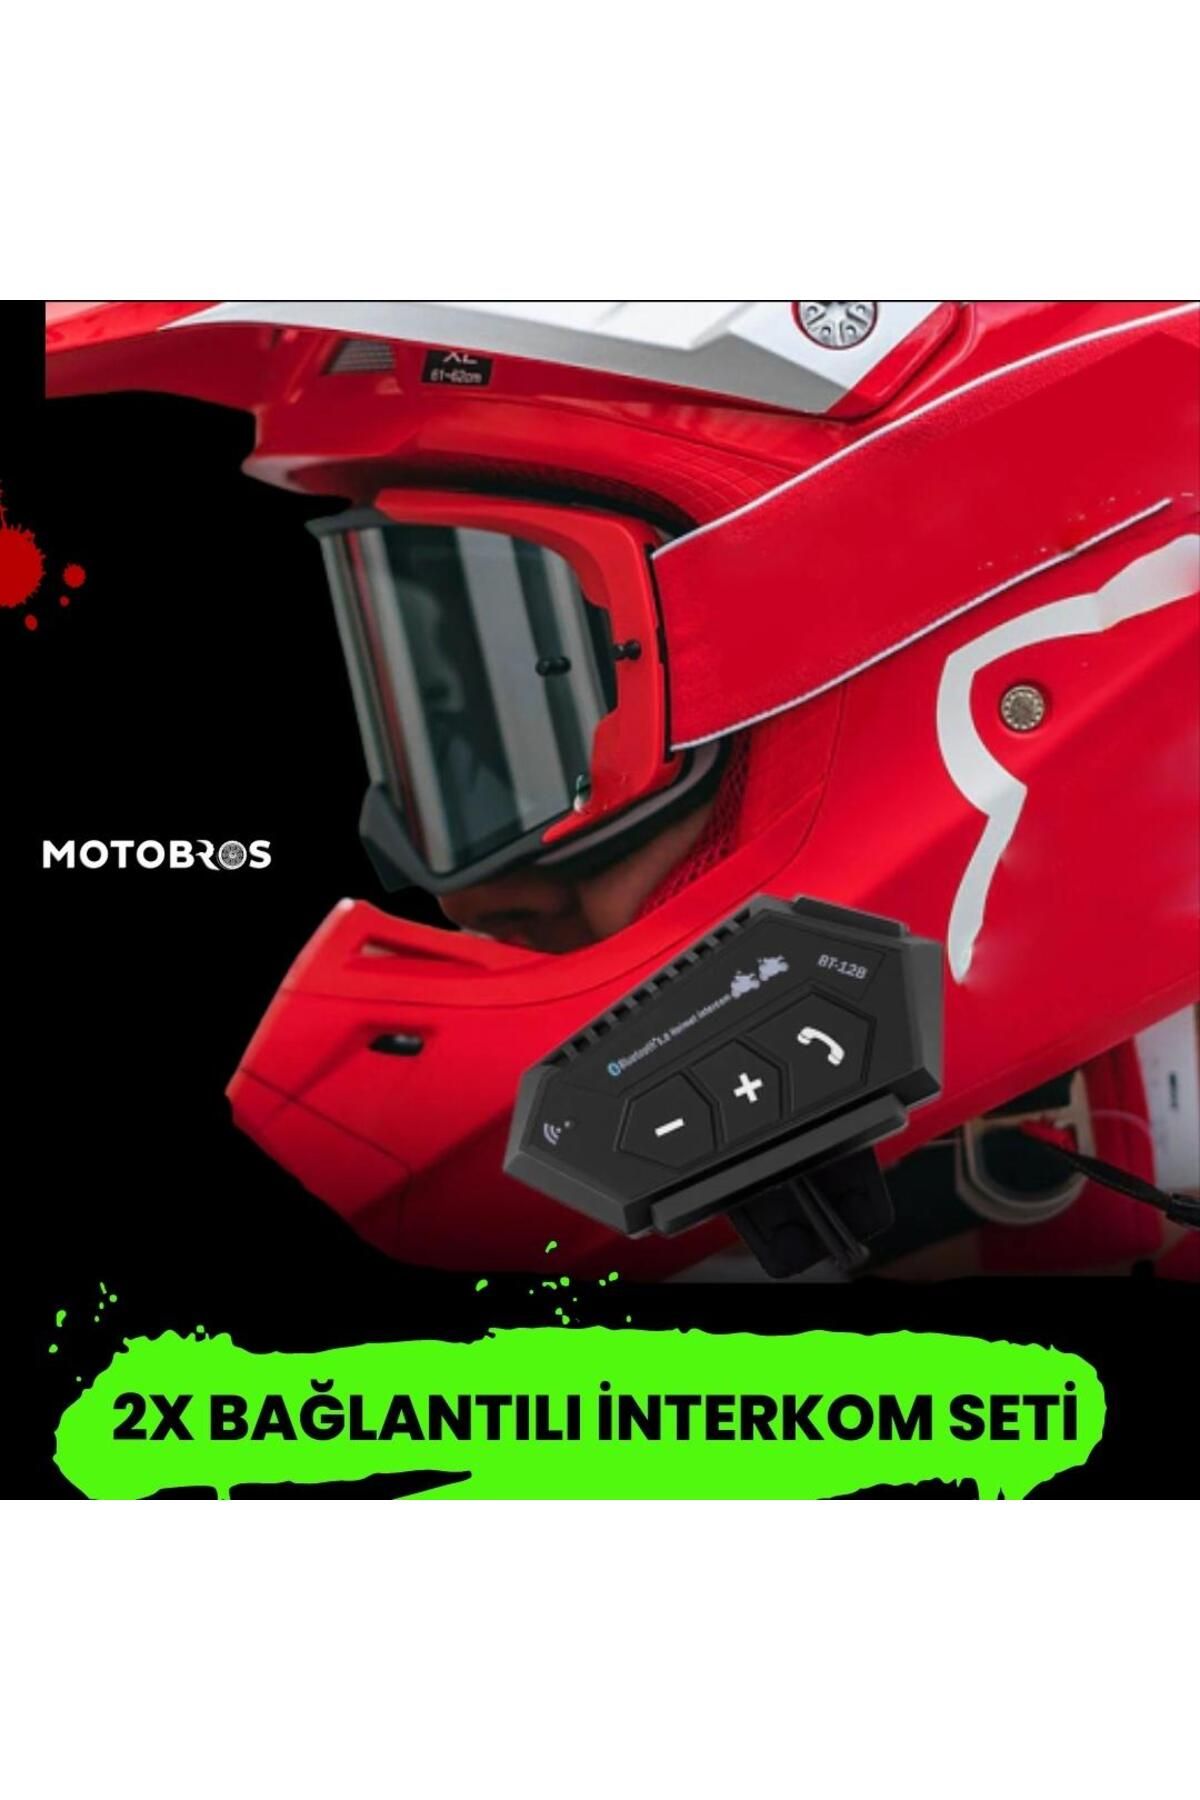 Motobros Intercom Seti 2 Interkom Arasında Bağlantı Özelliği Ve Bluetooth 5.0 Özelliği (SU GEÇİRMEZ)